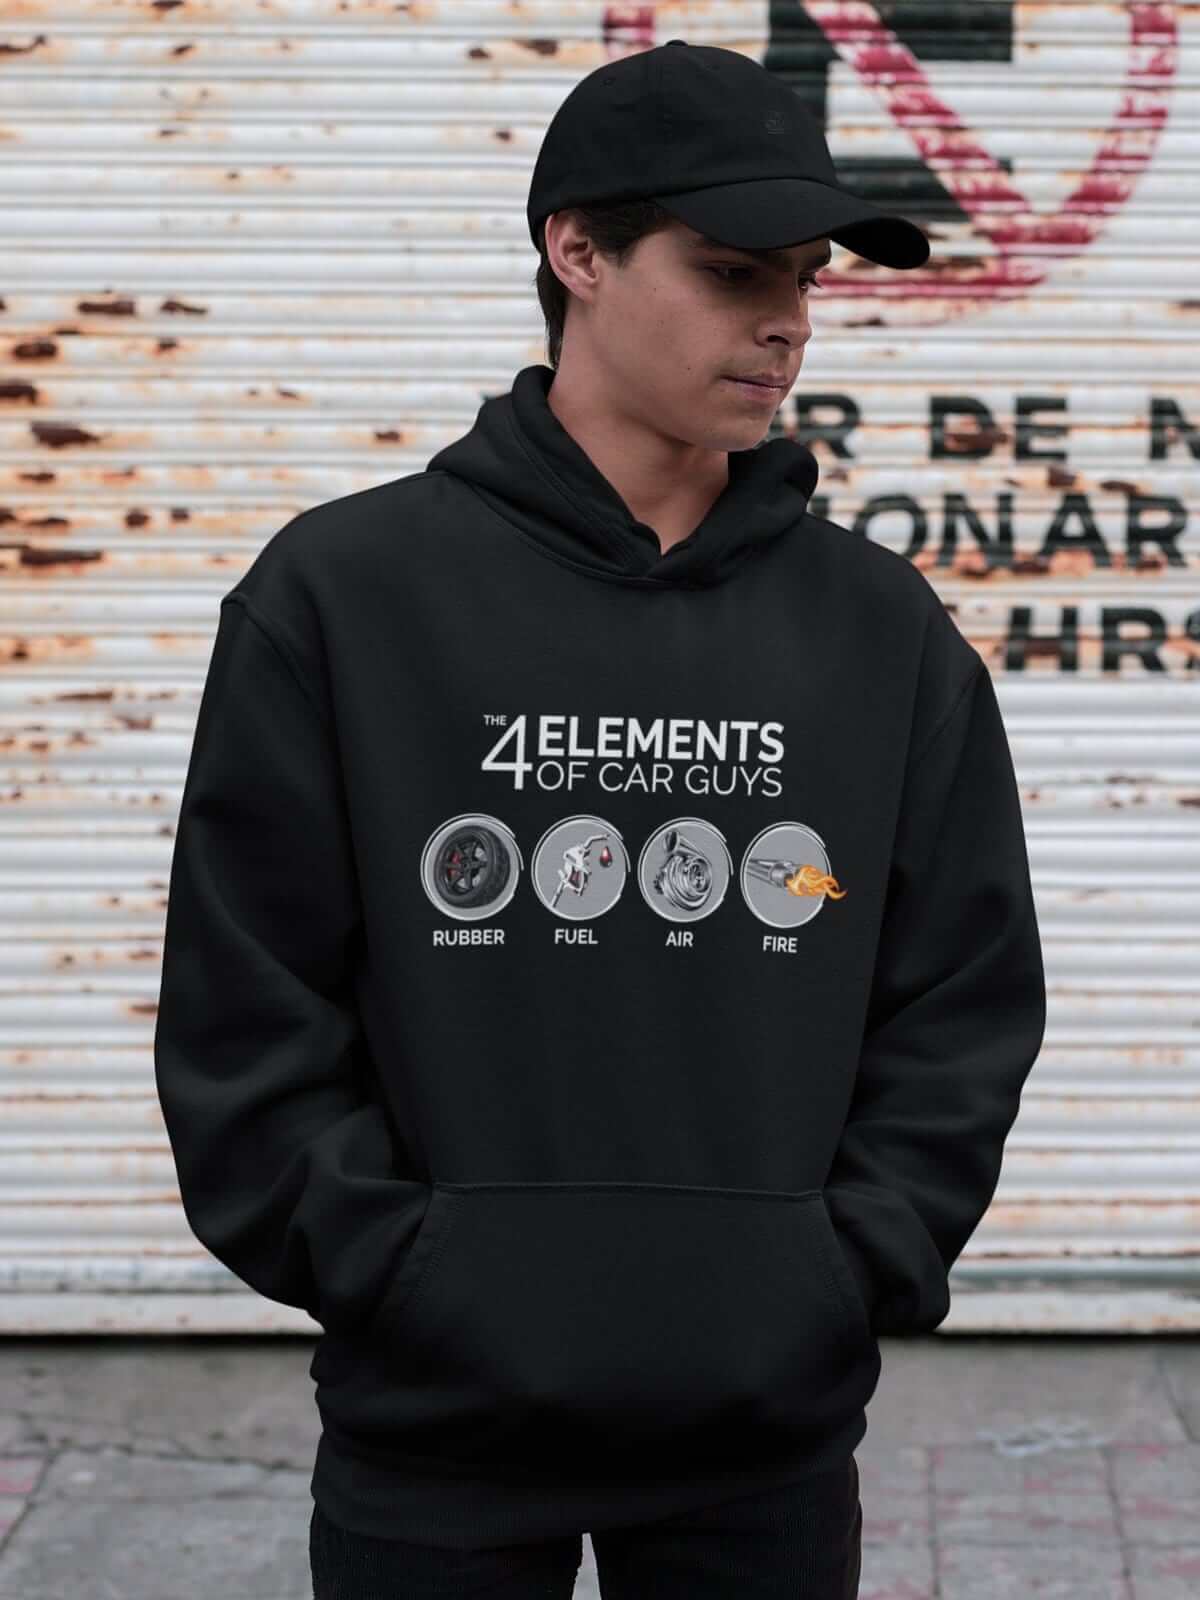 Funny "the 4 elements of car guys" black car hoodie, JDM sweatshirt, car guy gift, car lover, car fan, car enthusiast, petrolhead, JDM lover, boyfriend gift idea.